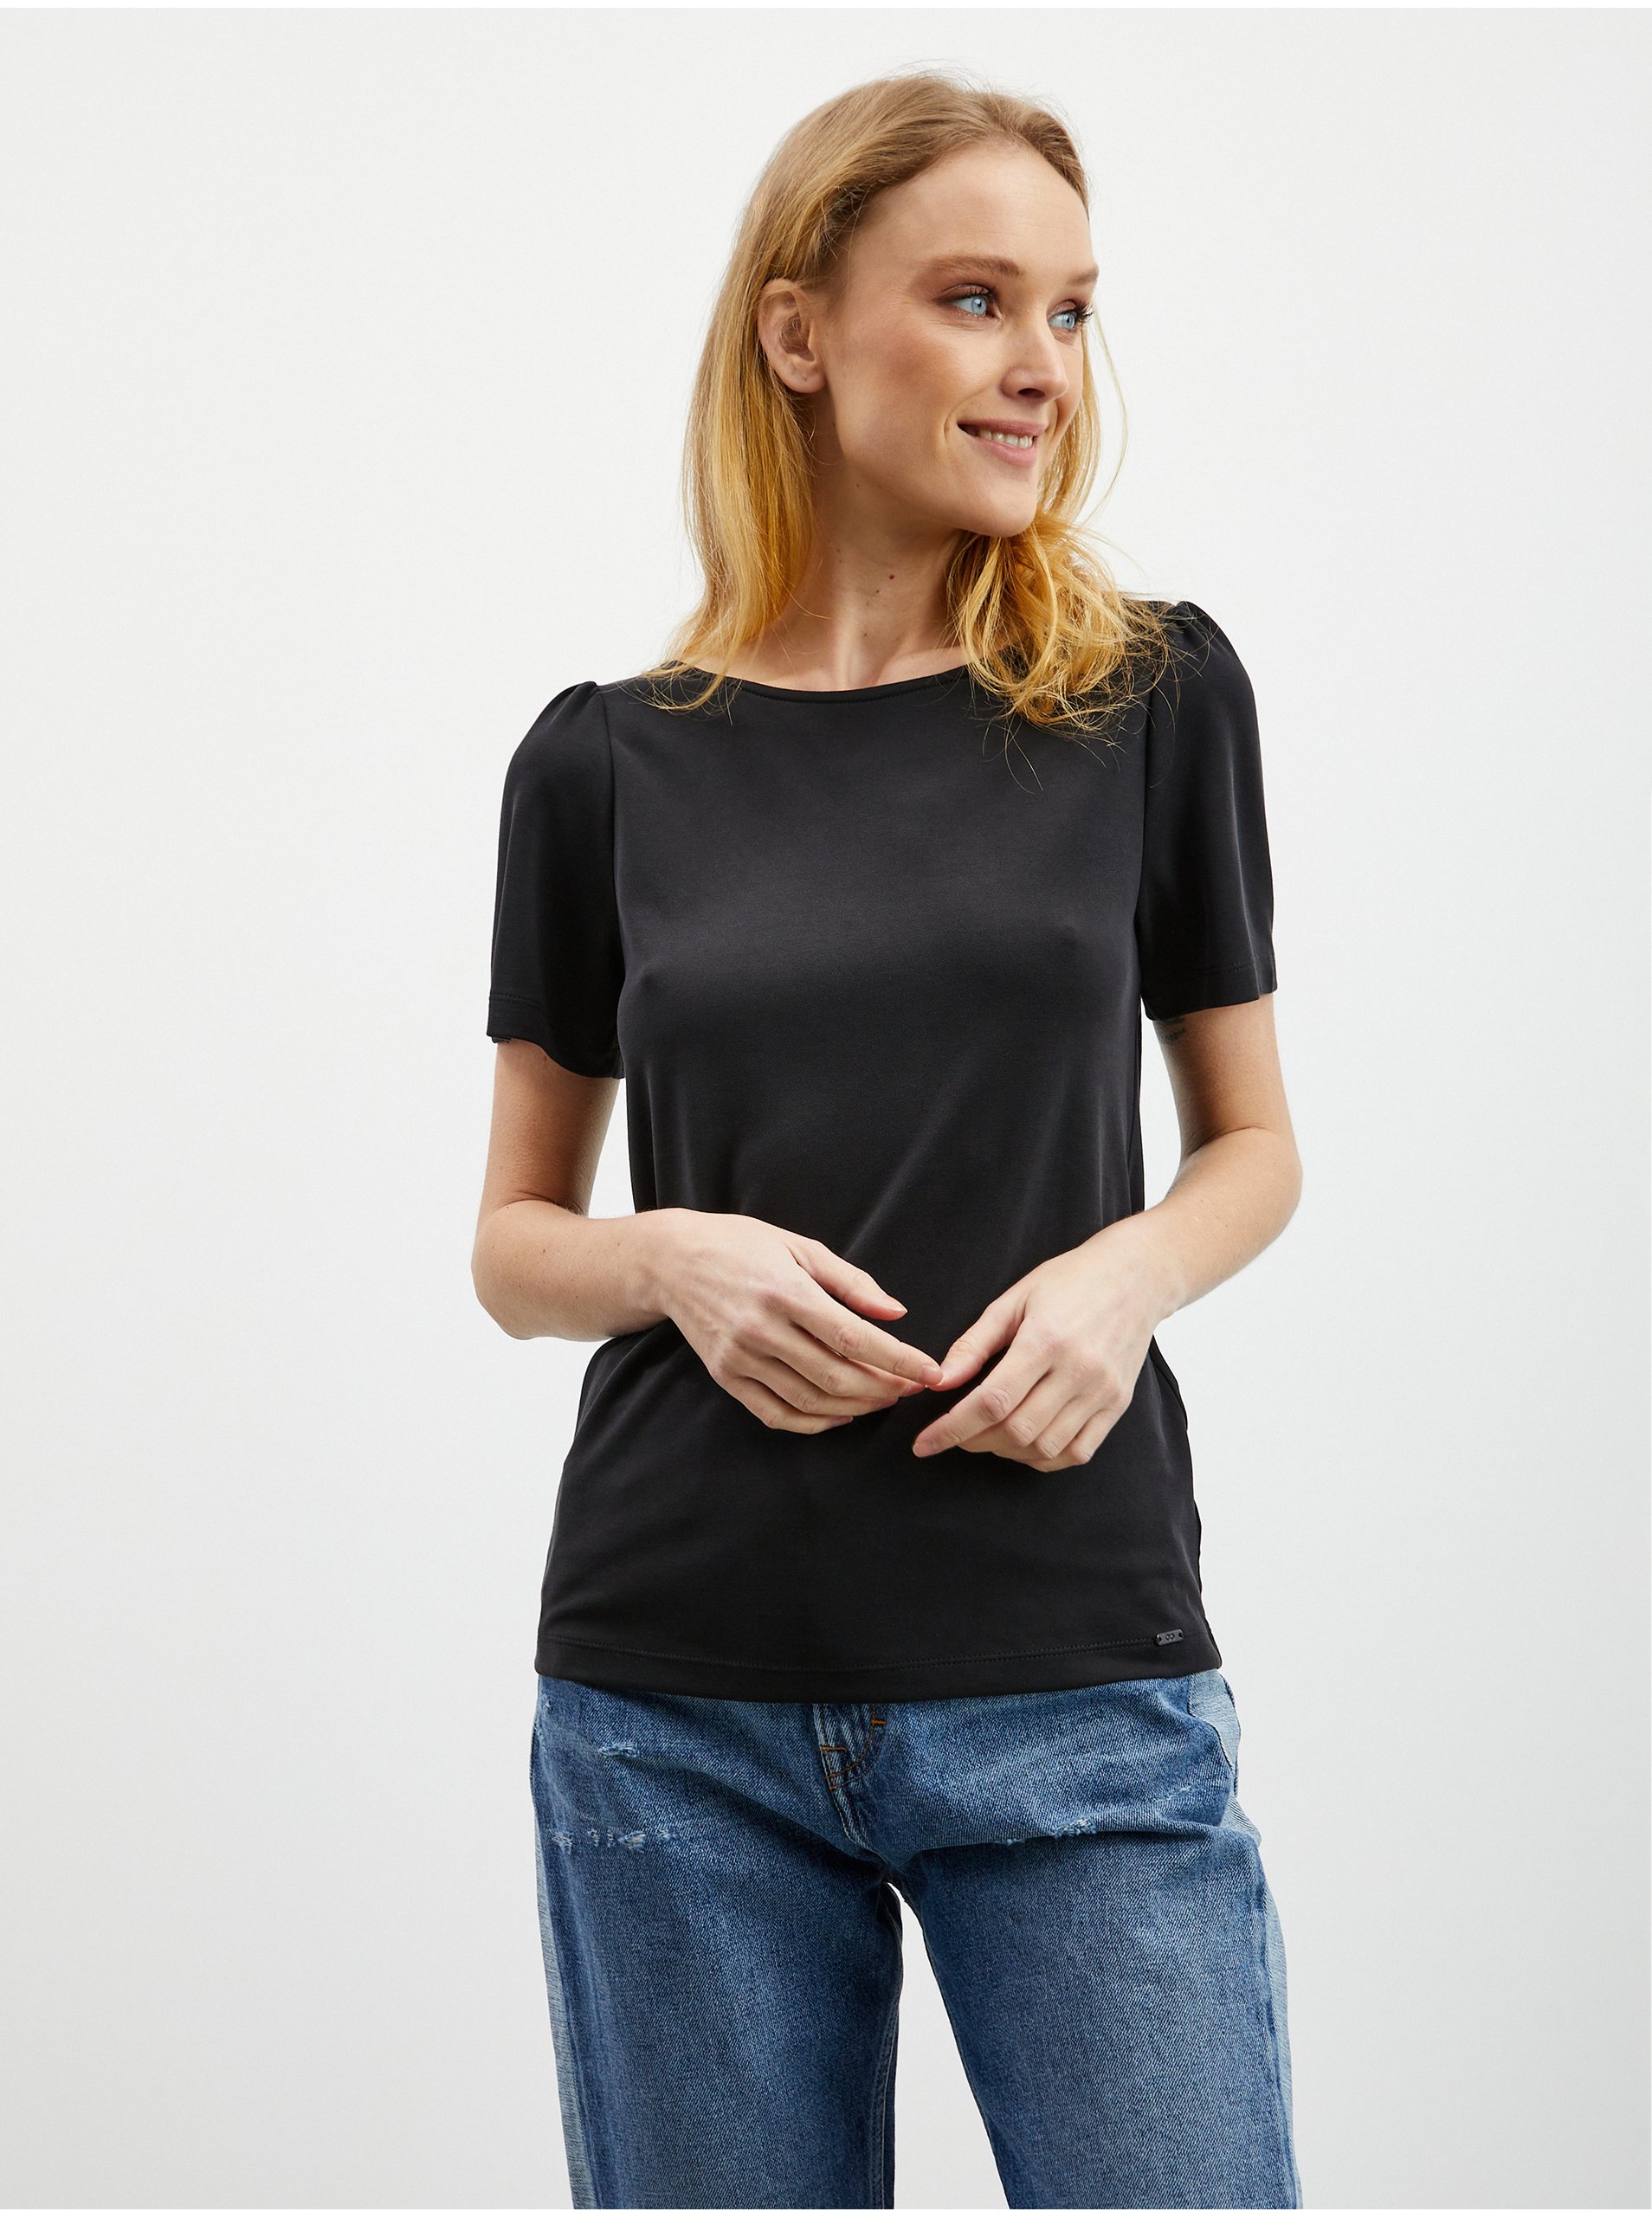 E-shop Černé dámské tričko se zavazováním na zádech ZOOT.lab Romy